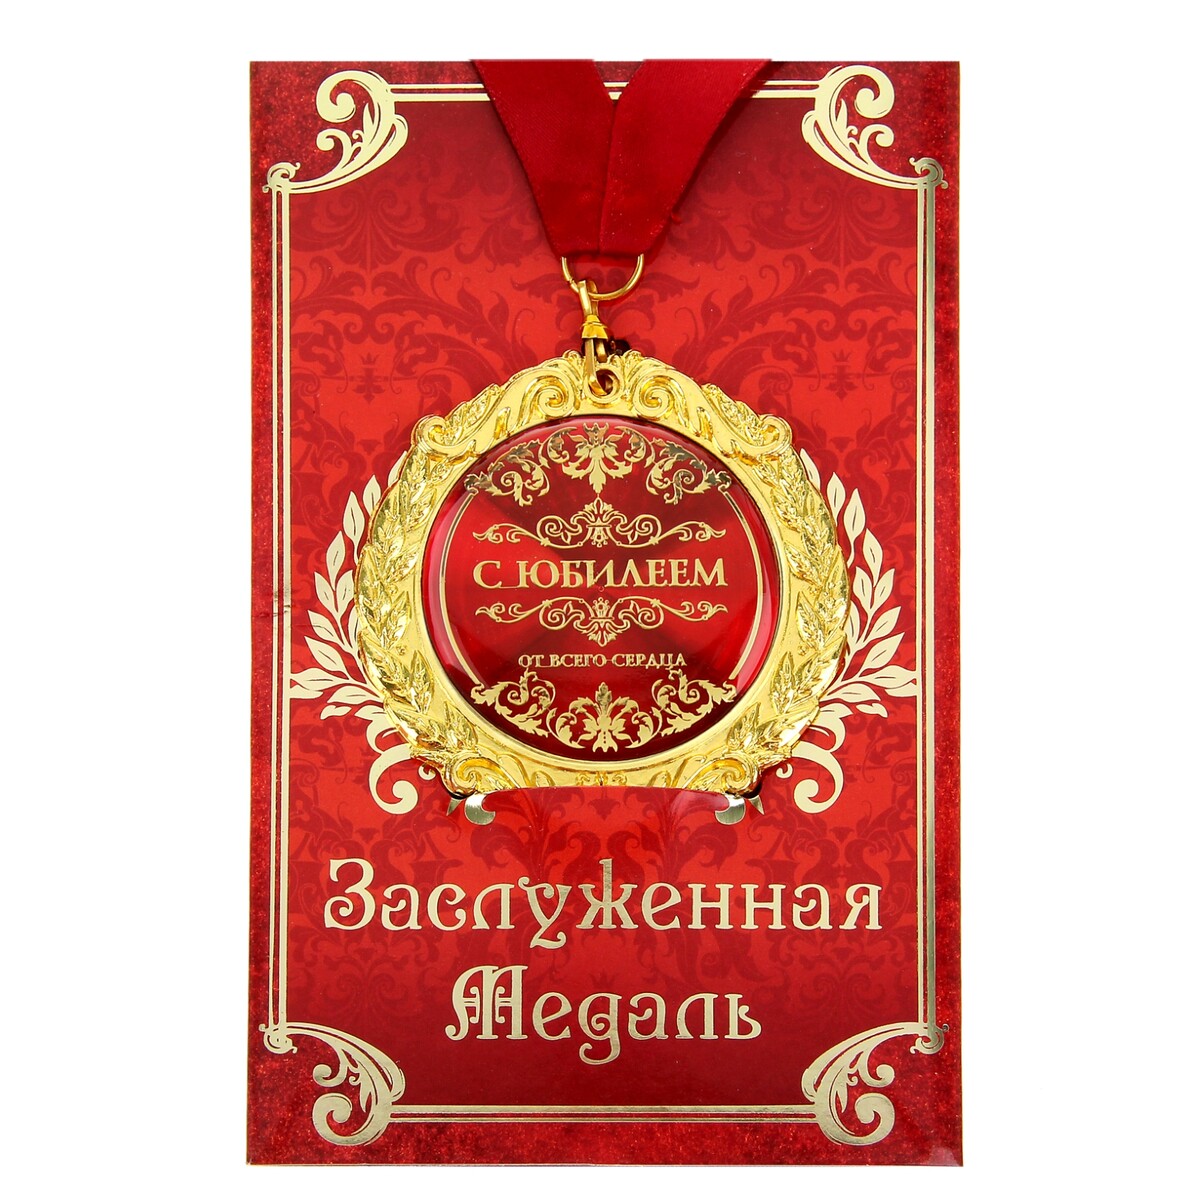 Медаль на открытке